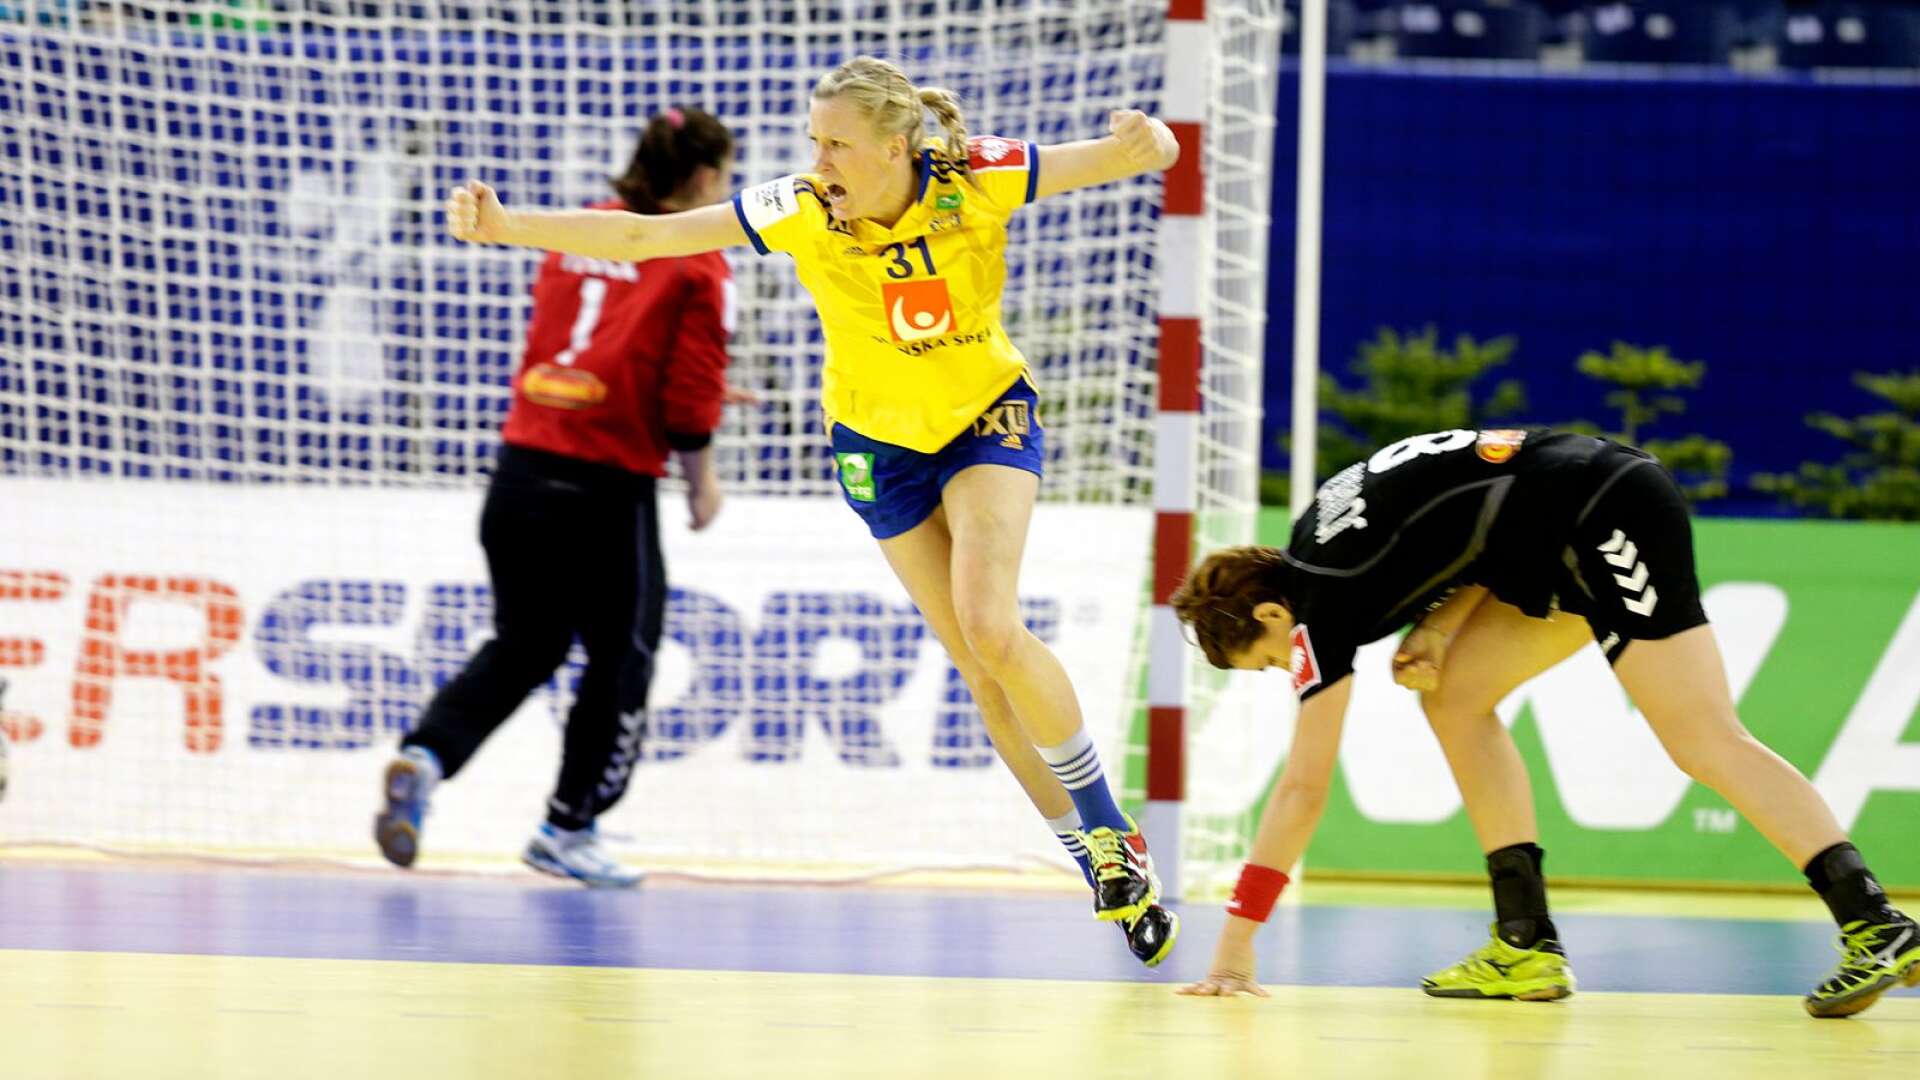 Anna-Maria Johansson jublar efter att ha gjort mål i bronsmatchen mellan Sverige och Montenegro vid handbolls-EM i Budapest 2014 